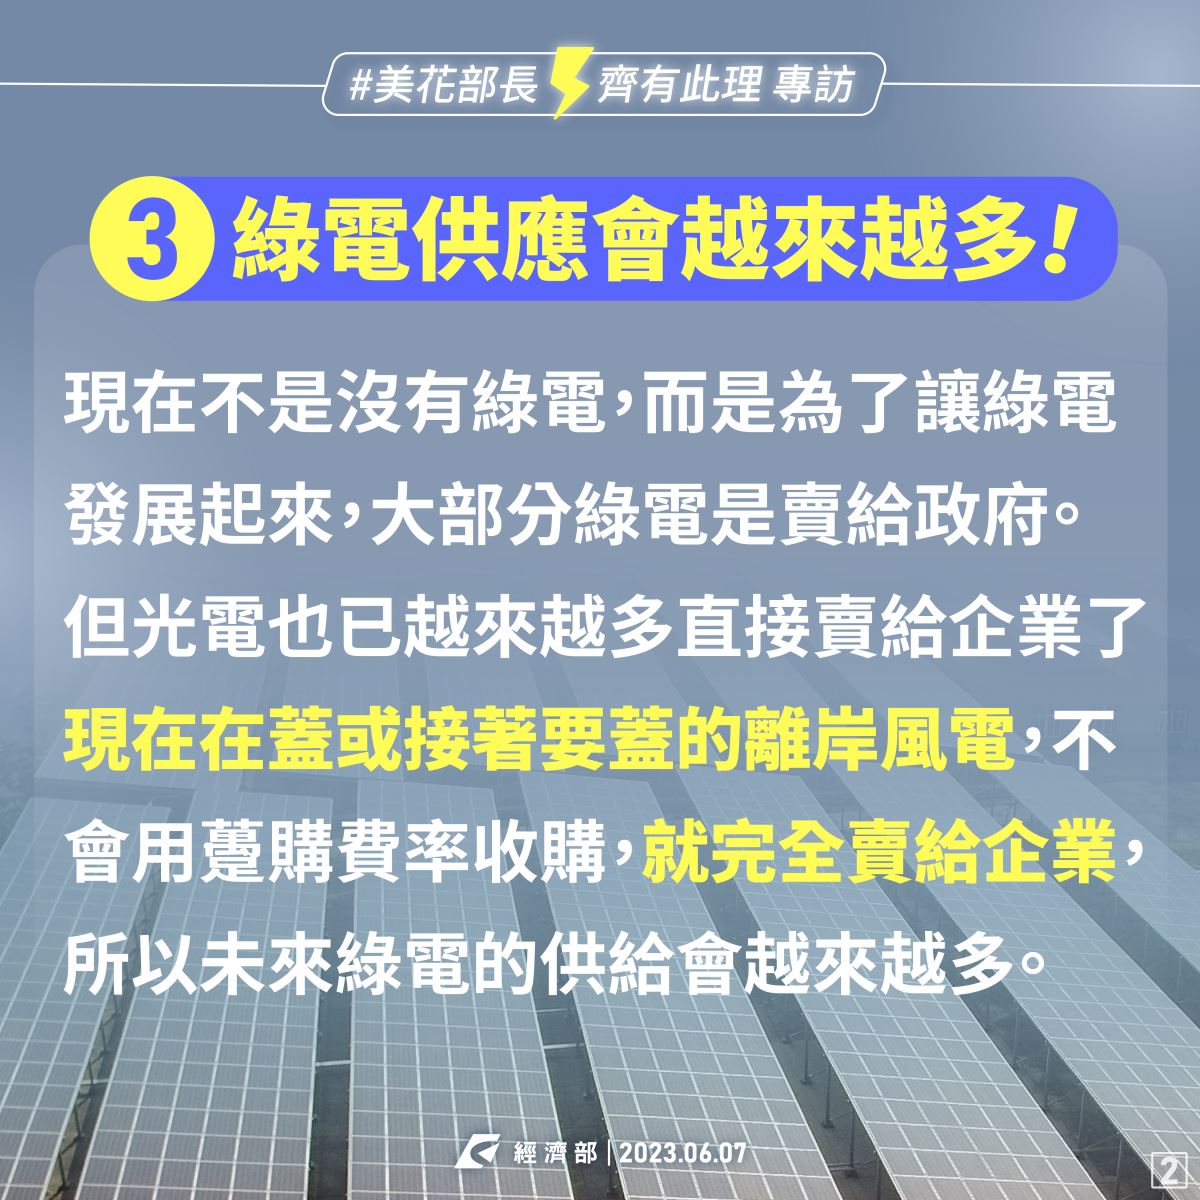 媒體報導台積電說台灣綠電不足